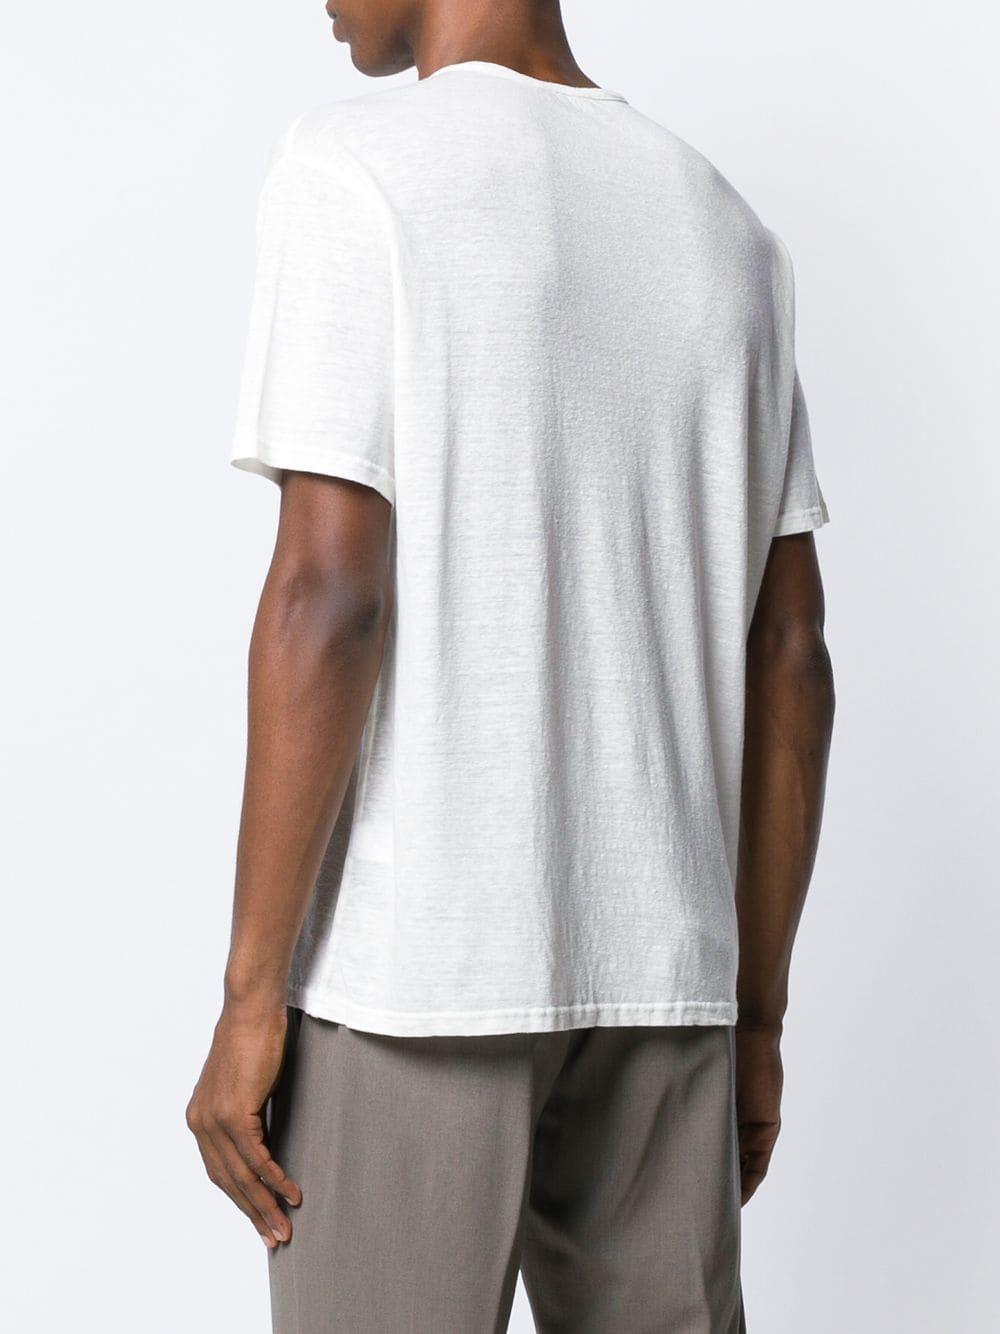 Roberto Collina Linen Short-sleeved T-shirt in White for Men - Lyst